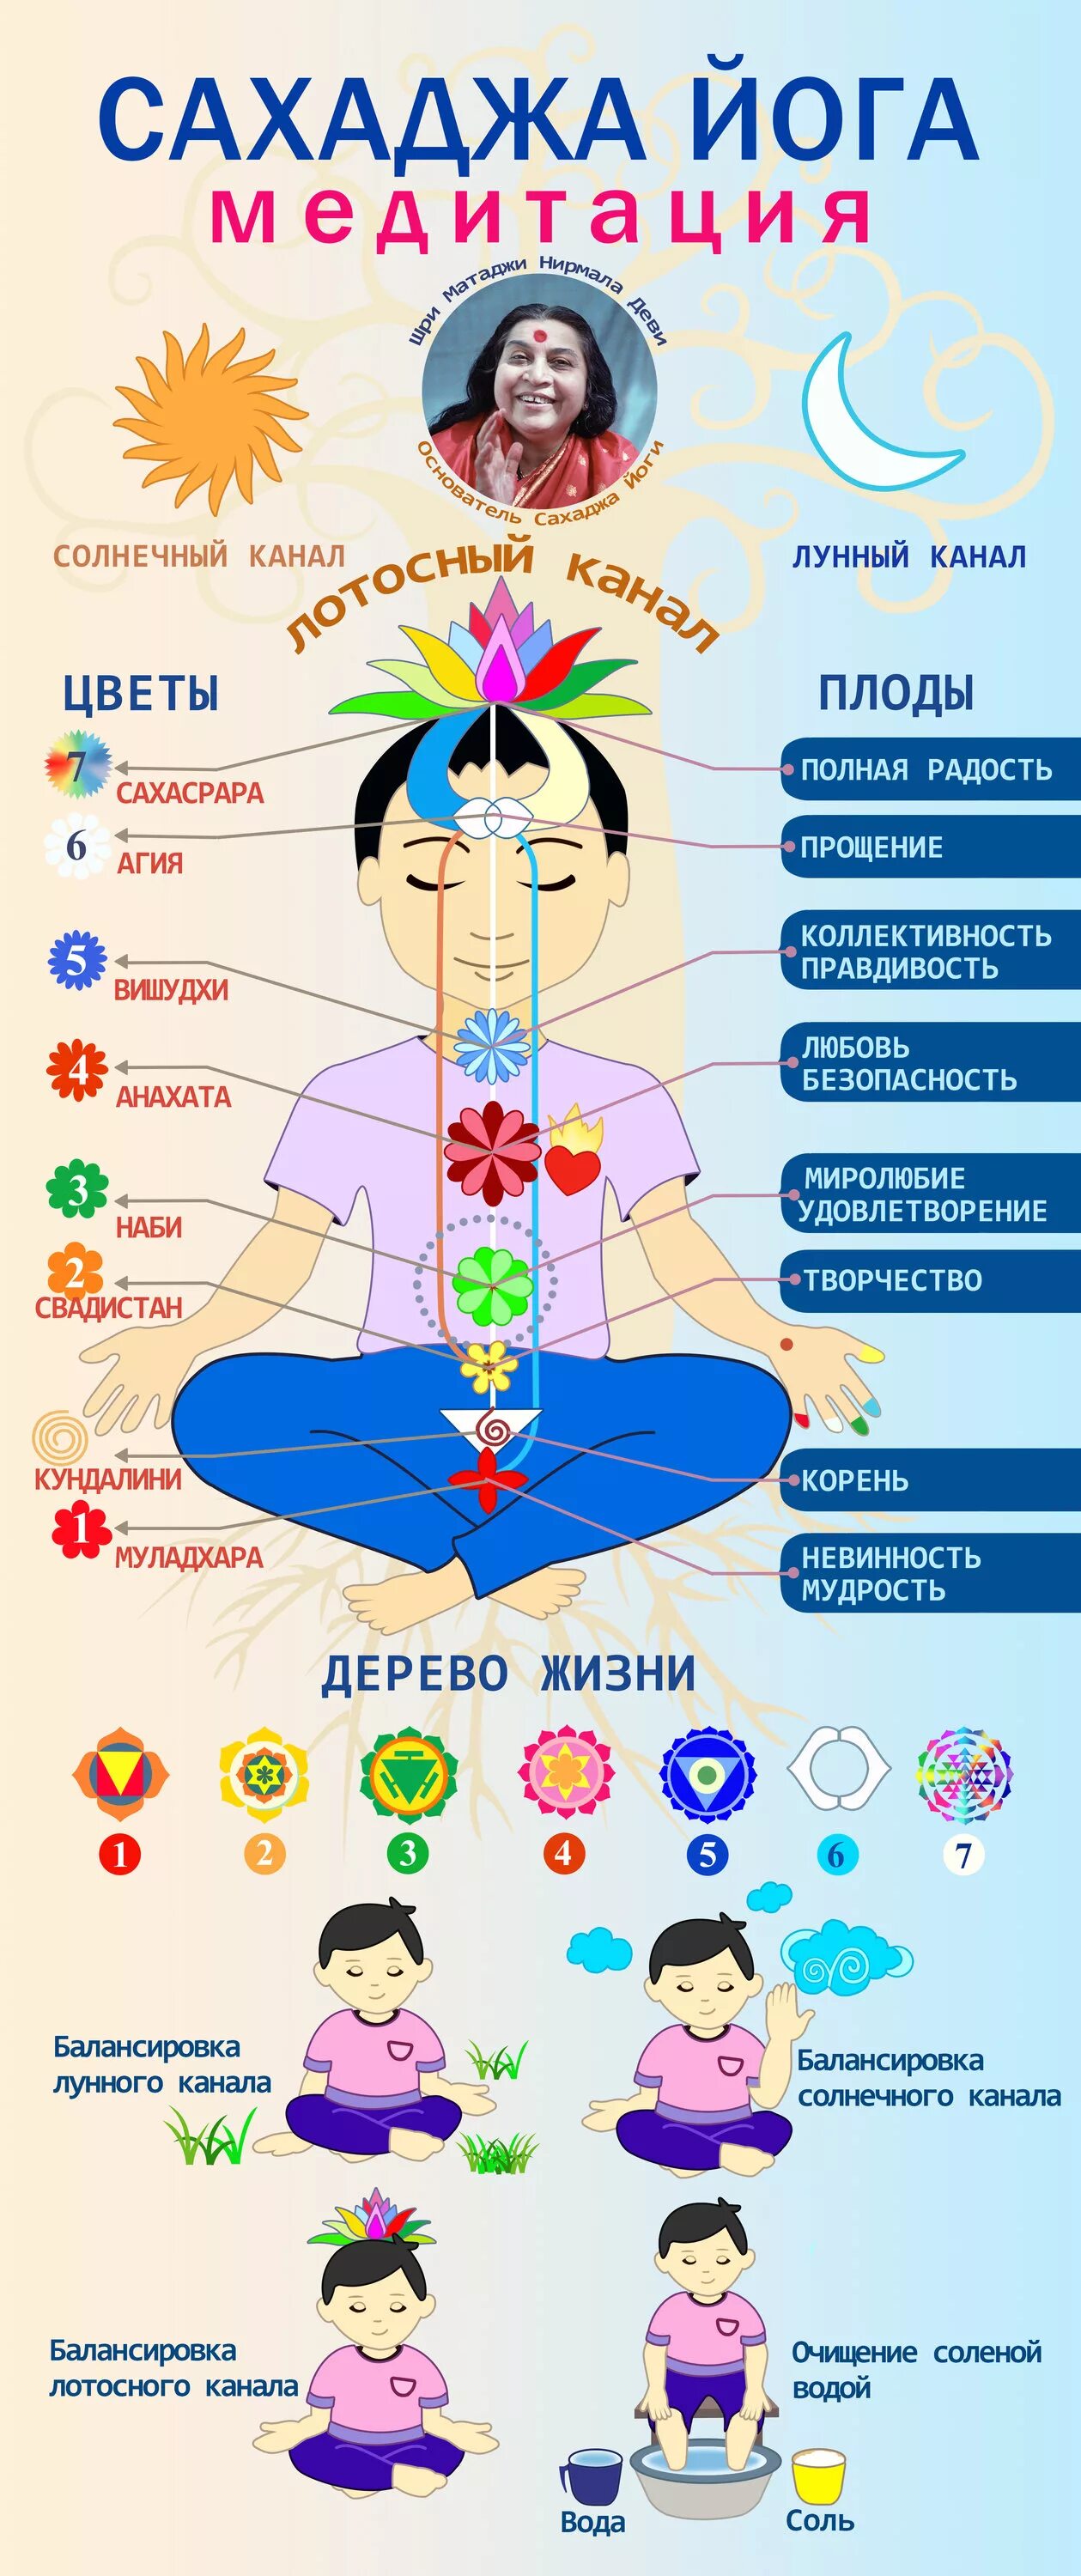 Сахаджа медитация. Схема чакр Сахаджа йога. Сахаджа йога картинки. Сахаджа йога энергетические центры. Кундалини Сахаджа йога.